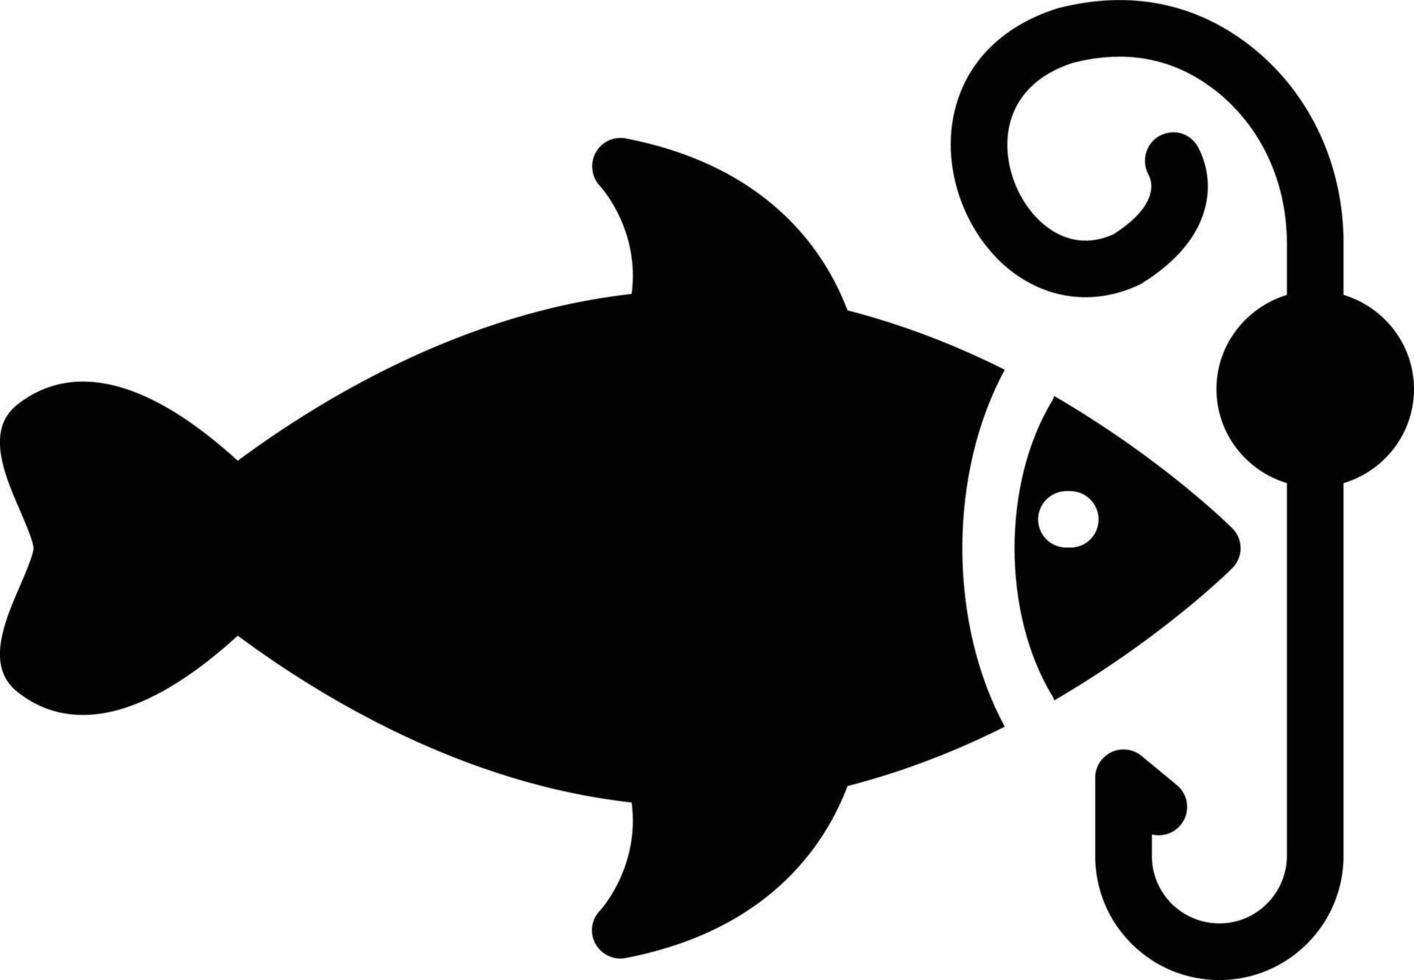 ilustração em vetor gancho de peixe em um icons.vector de qualidade background.premium para o conceito e design gráfico.